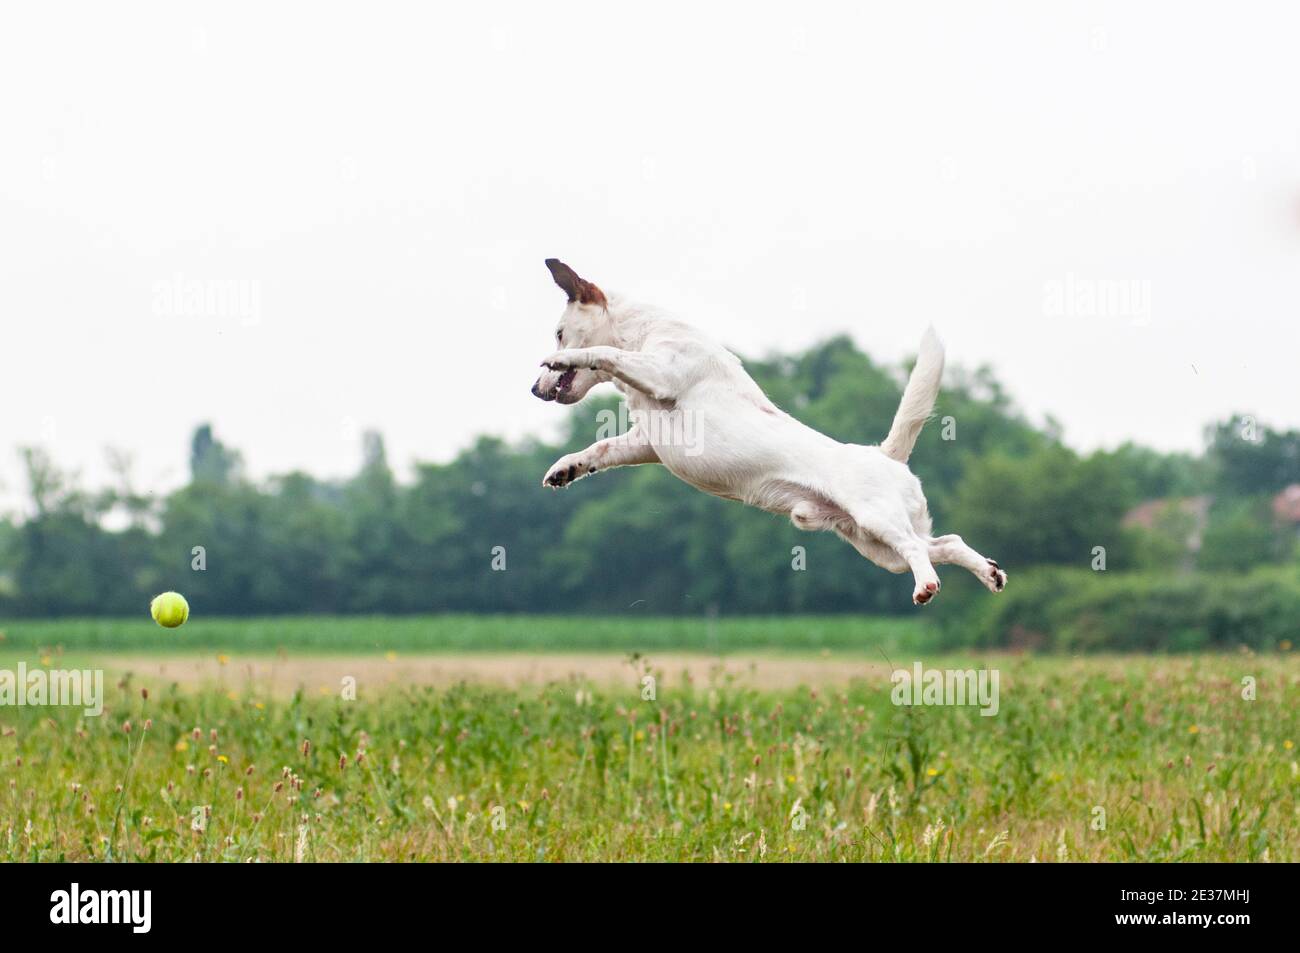 Jack Russell Terrier springt hoch in die Luft, um einen Tennisball zu fangen. Der Hund ist in einem Park, sportlich und fit Hund Stockfoto